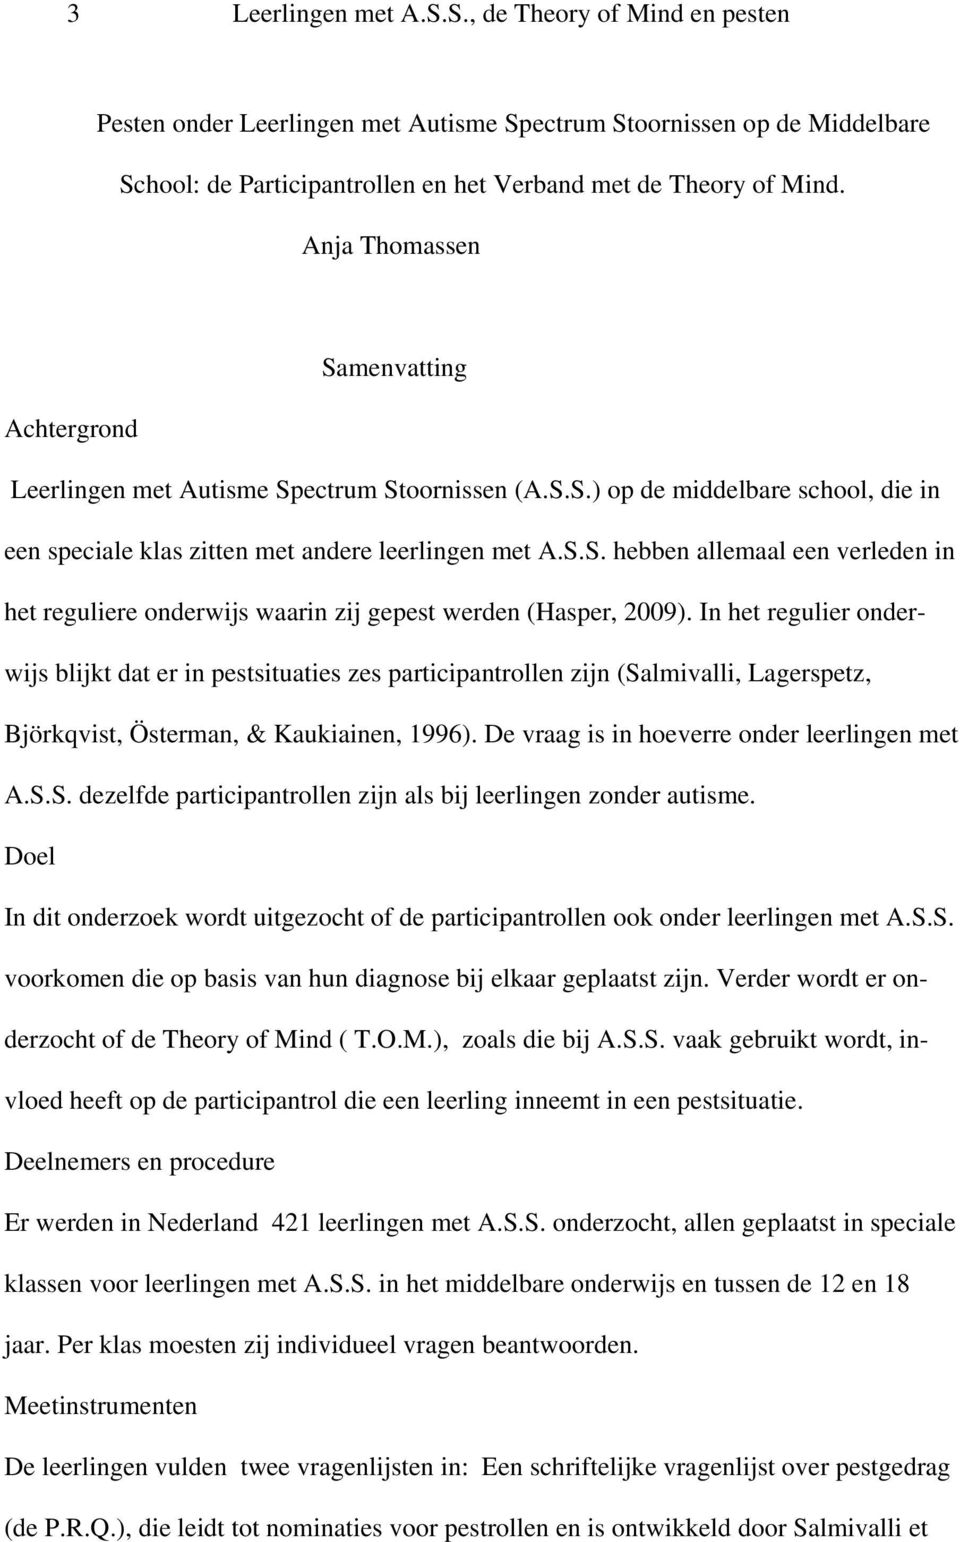 In het regulier onderwijs blijkt dat er in pestsituaties zes participantrollen zijn (Salmivalli, Lagerspetz, Björkqvist, Österman, & Kaukiainen, 1996). De vraag is in hoeverre onder leerlingen met A.